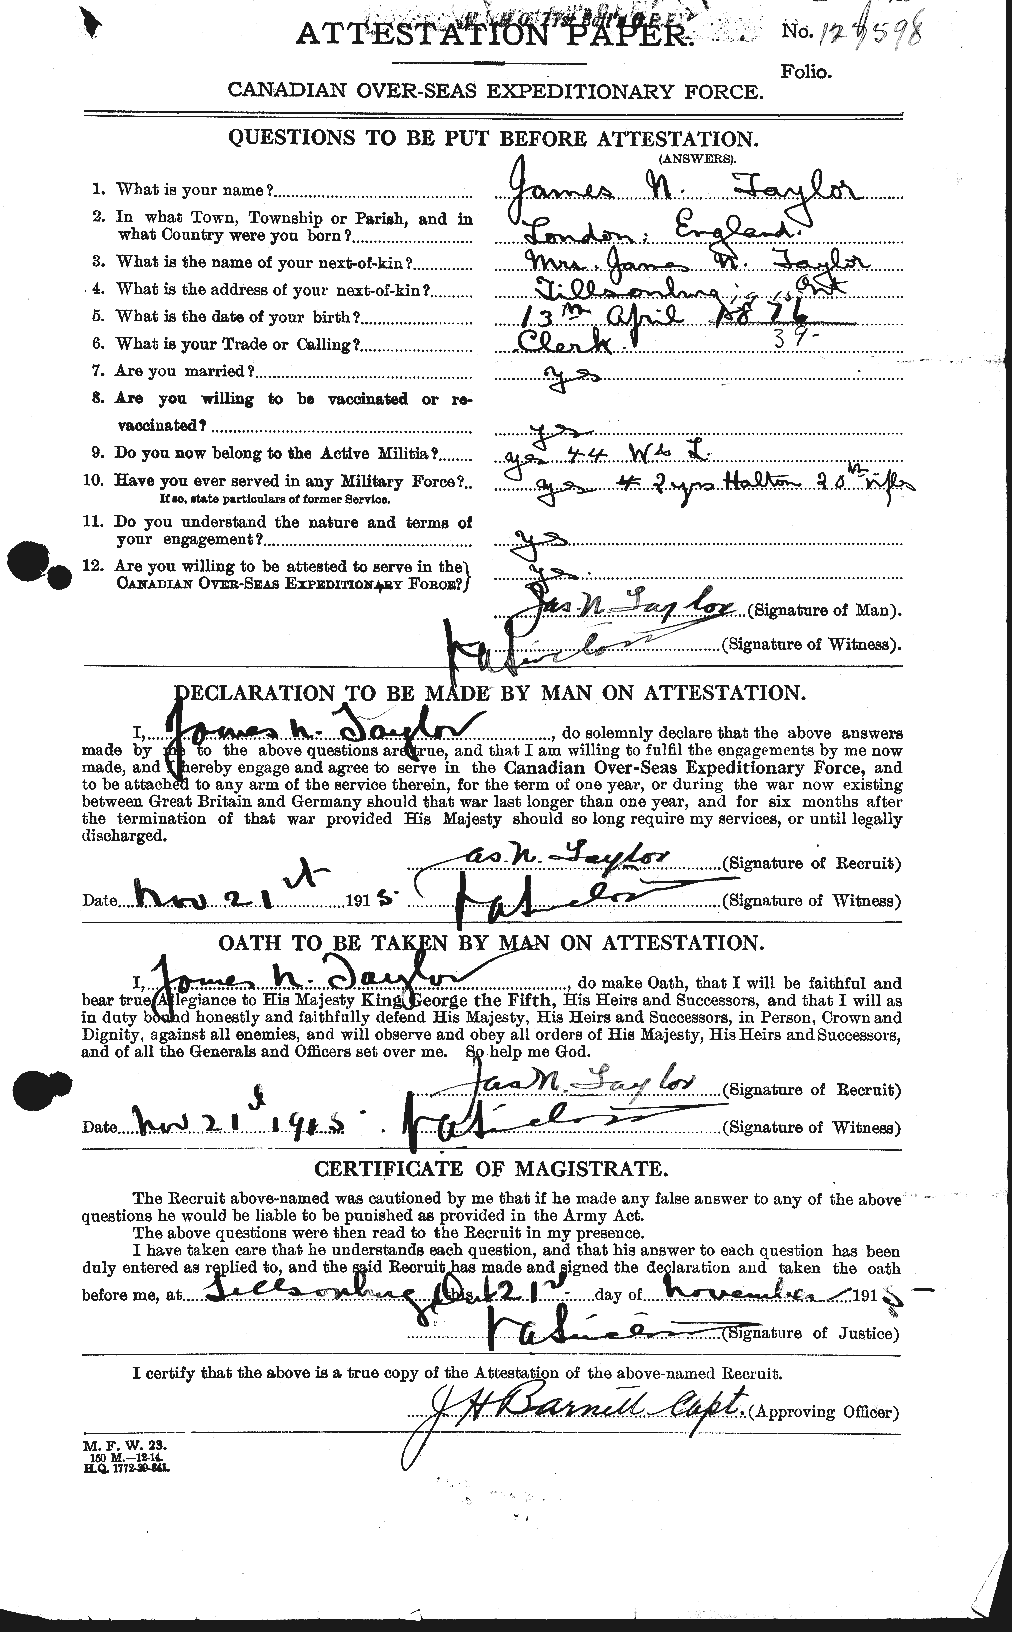 Dossiers du Personnel de la Première Guerre mondiale - CEC 626944a